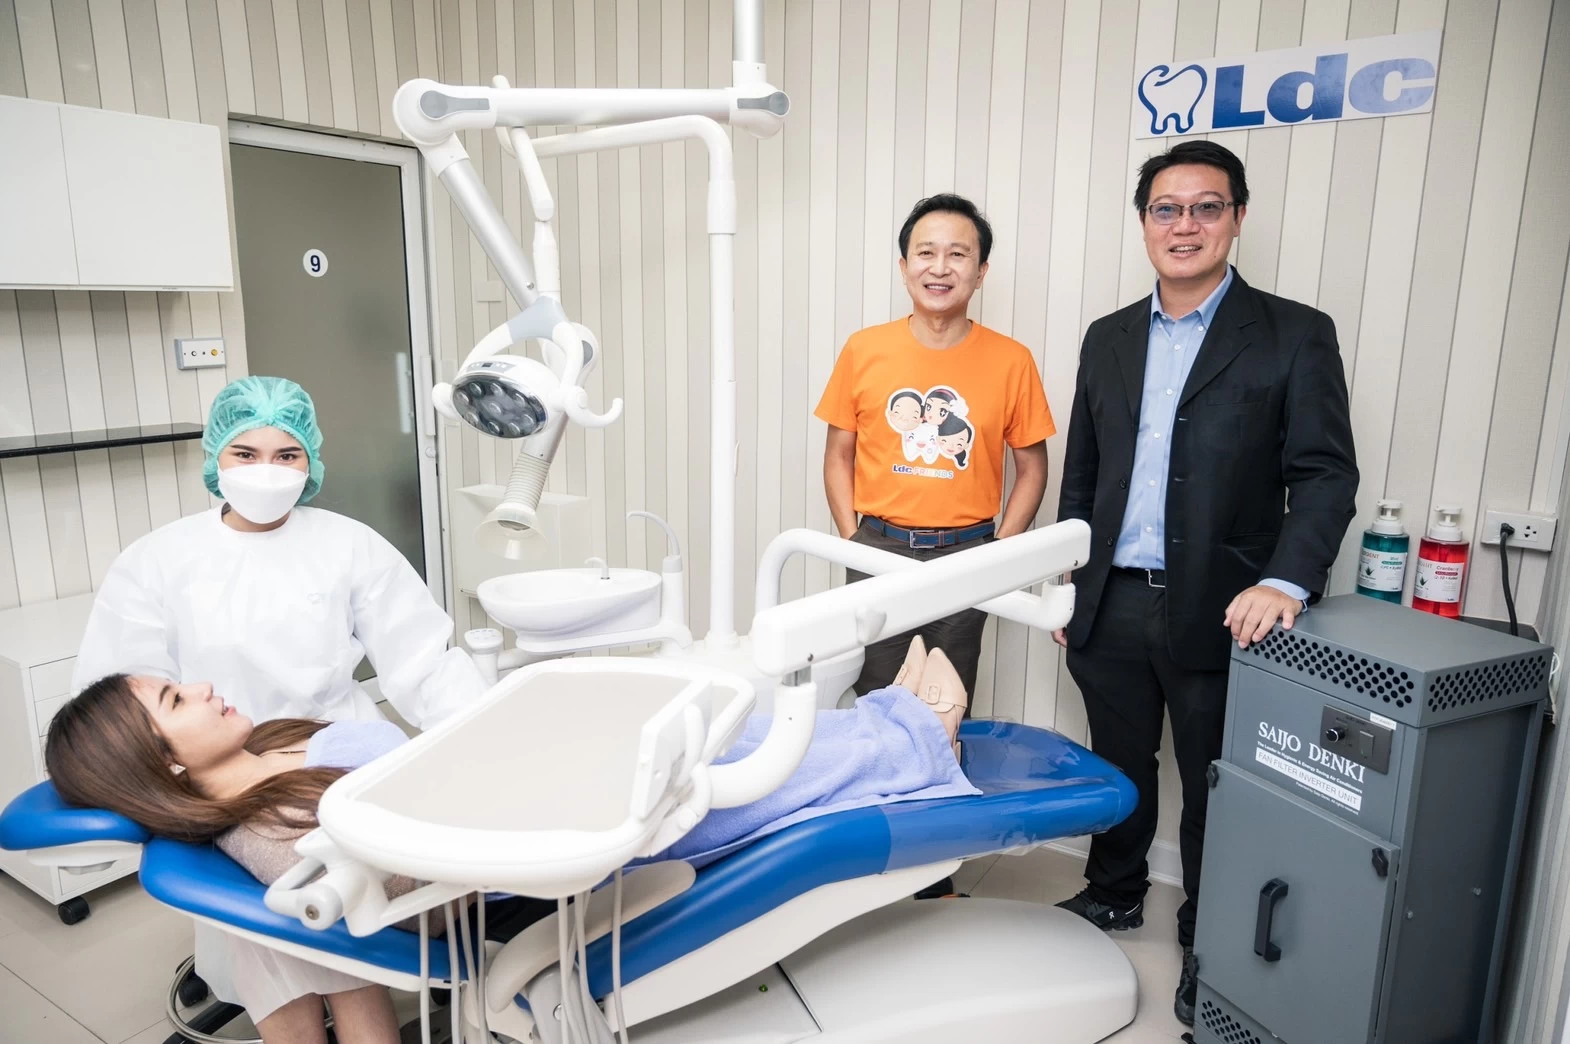 LDC1 | LDC | LDC ทุ่มงบ 10 ล้าน จับมือ Saijo Denki พัฒนาระบบหมุนเวียนอากาศบริสุทธิ์ Air Fresh 100% ในห้องฟัน พร้อมเชิญคนดังทดสอบห้องฟันอากาศสะอาดมาตรฐานห้องผ่าตัด